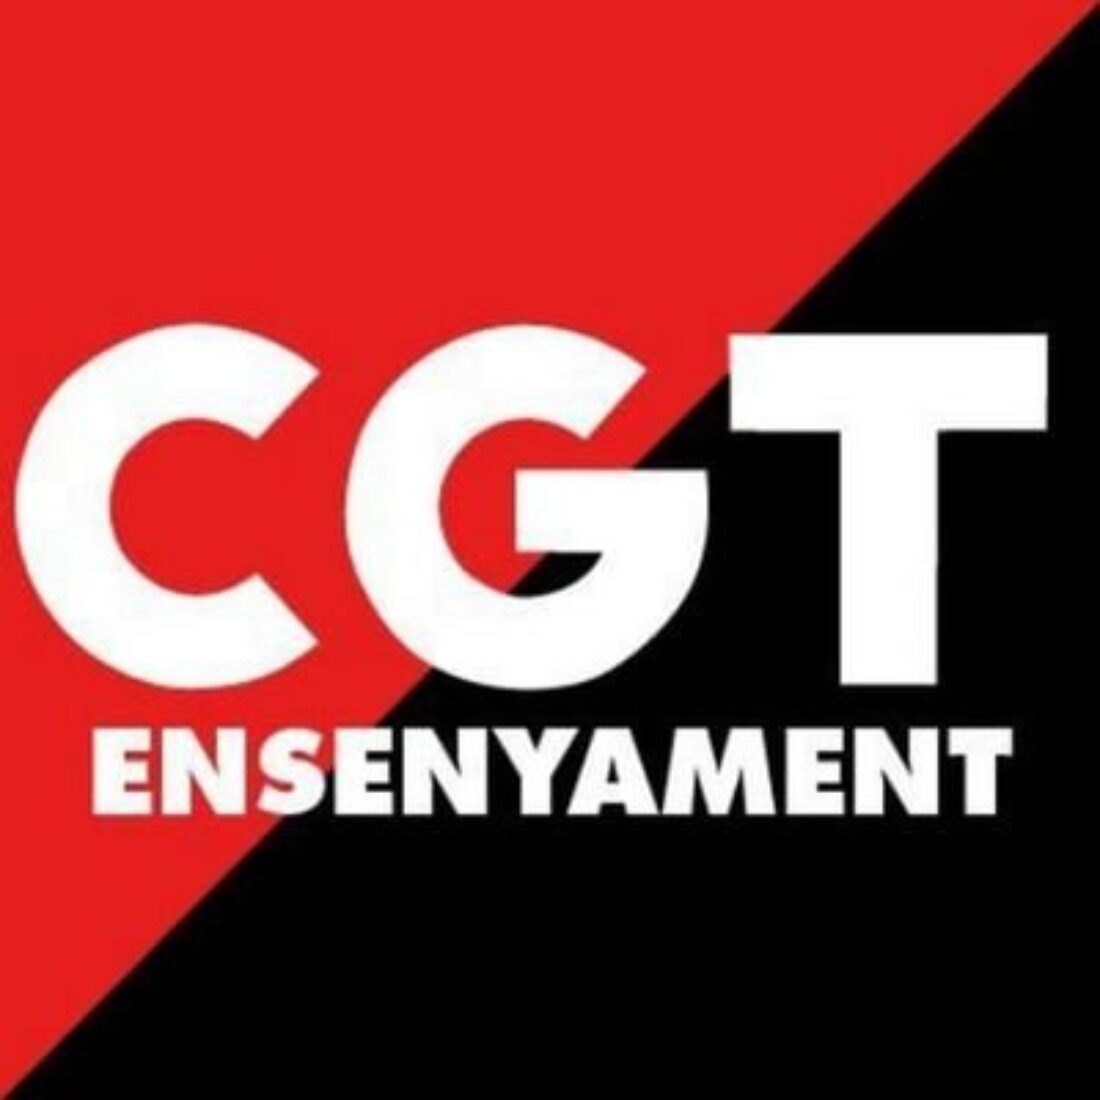 Comunicat de CGT sobre la proposta de pacte Electoralista